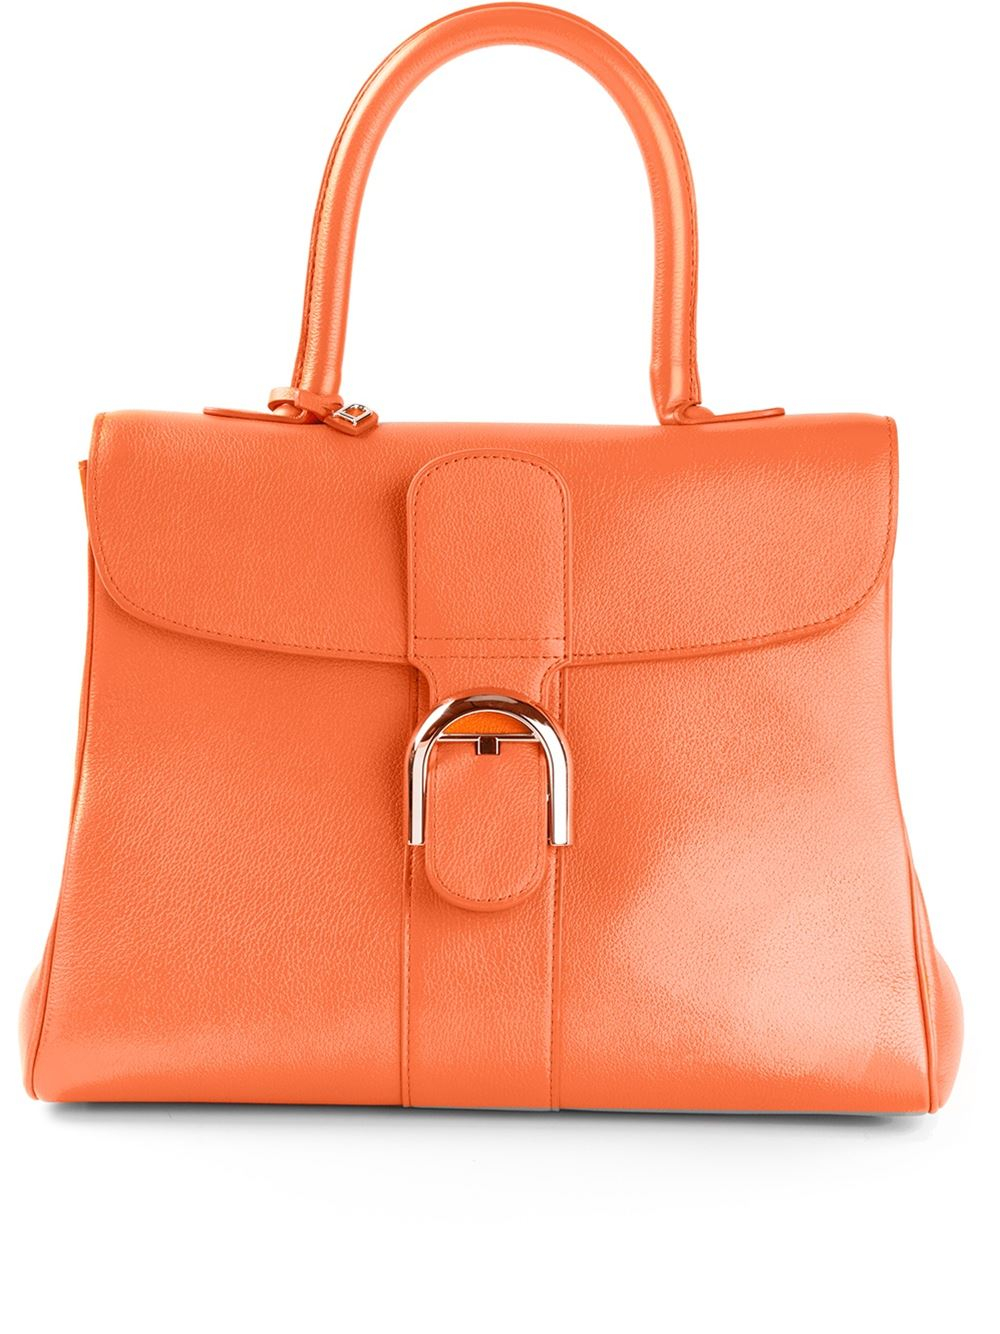 Lyst - Delvaux Le Brillant Tote Bag in Orange